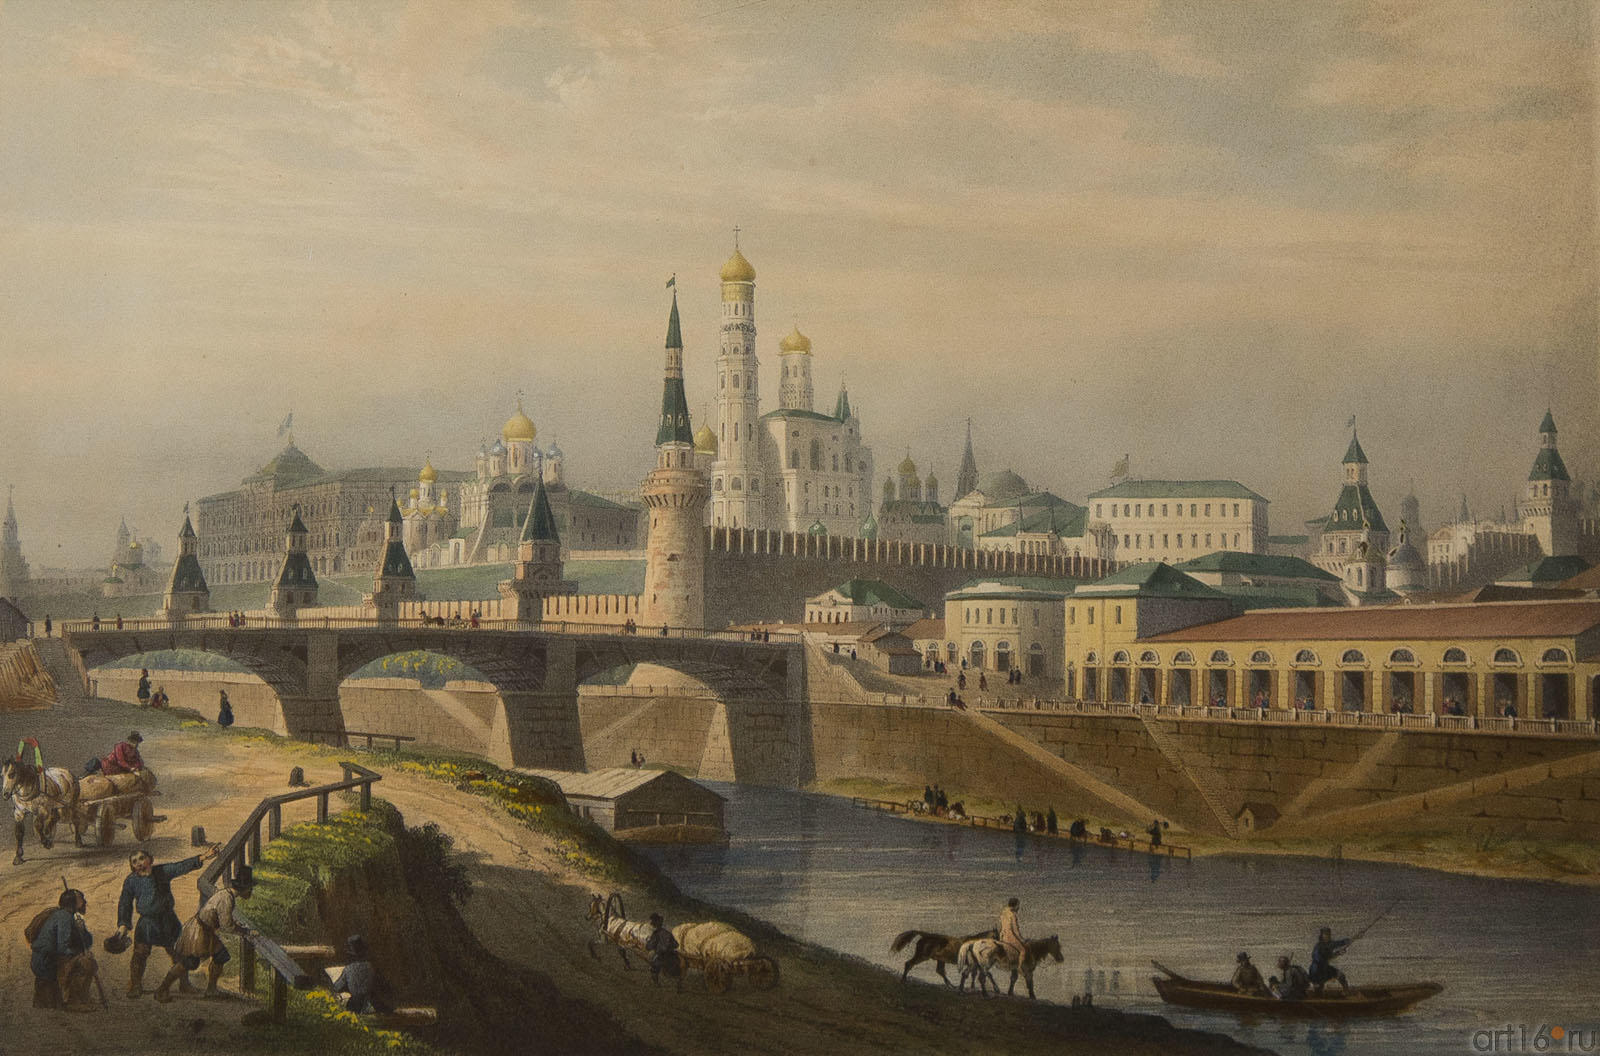 Бишбуа Л.П.А.(1801-1850), Лемерсье Ж.Р.(1803-1887). Общий вид кремля::Москва и москвичи. Традиции и современность